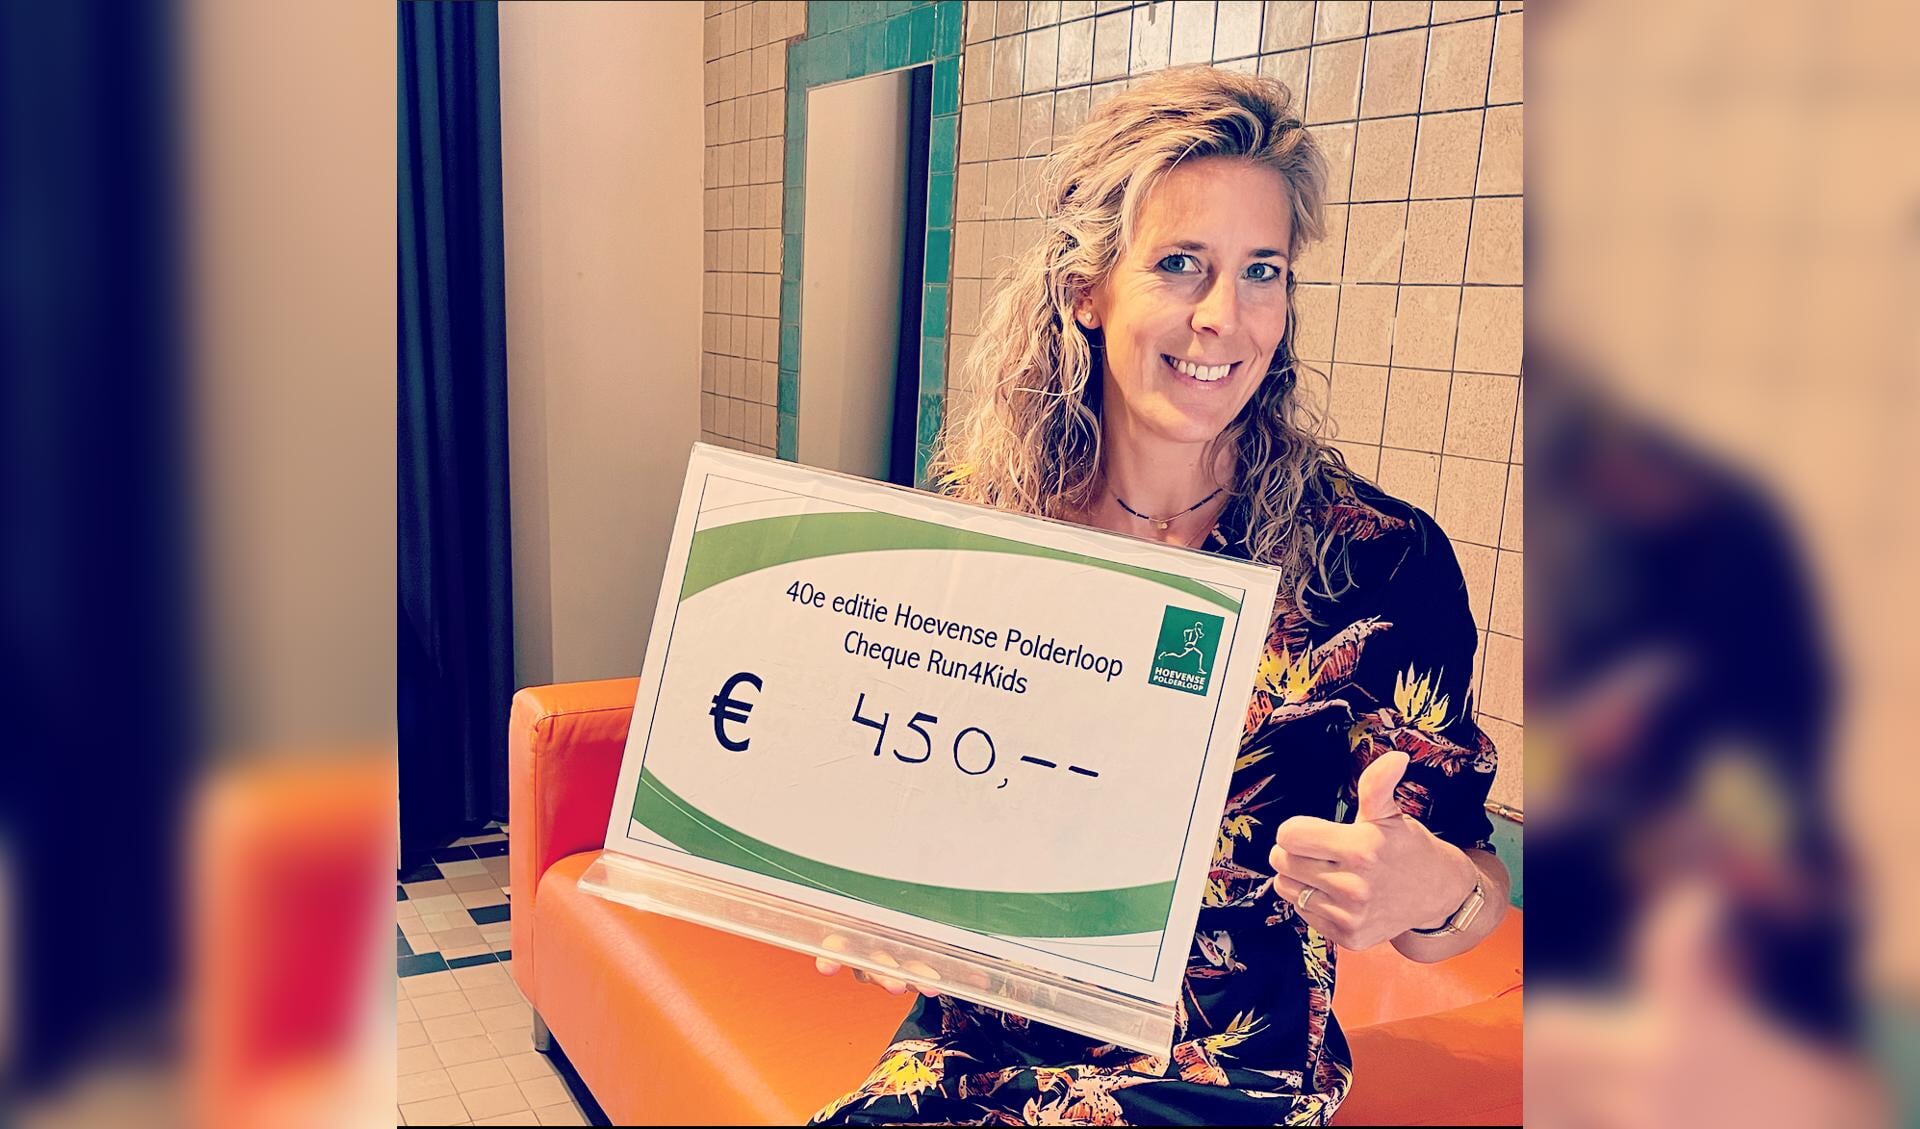 Run4Kids Coordinator Melanie Testers is erg blij met de dubbele donatie van de Polderloop